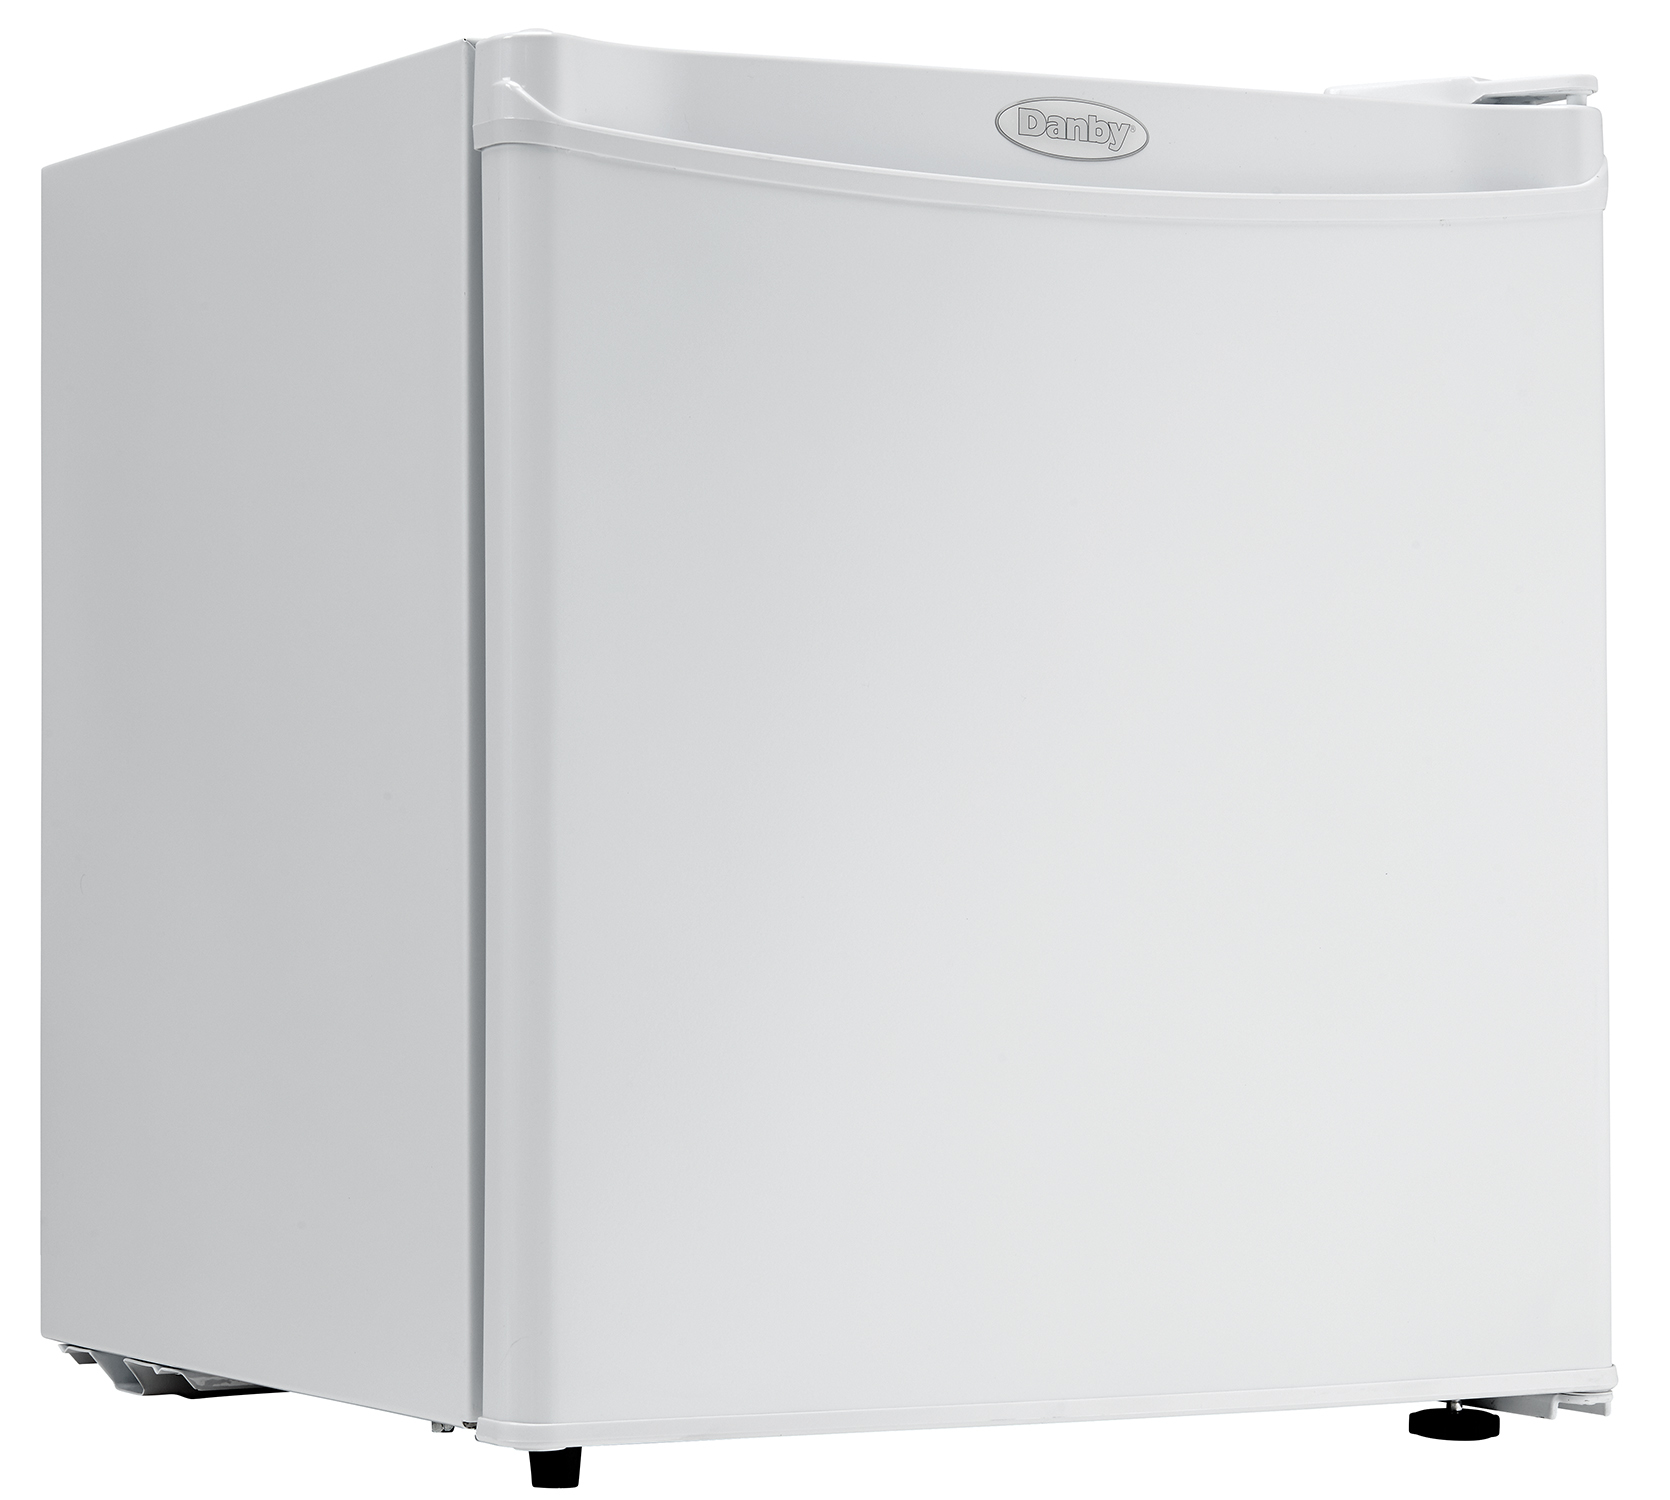 Refrigerador Danby Dcr016Xa4Wdb 1.6 Pies Congelador Blanco